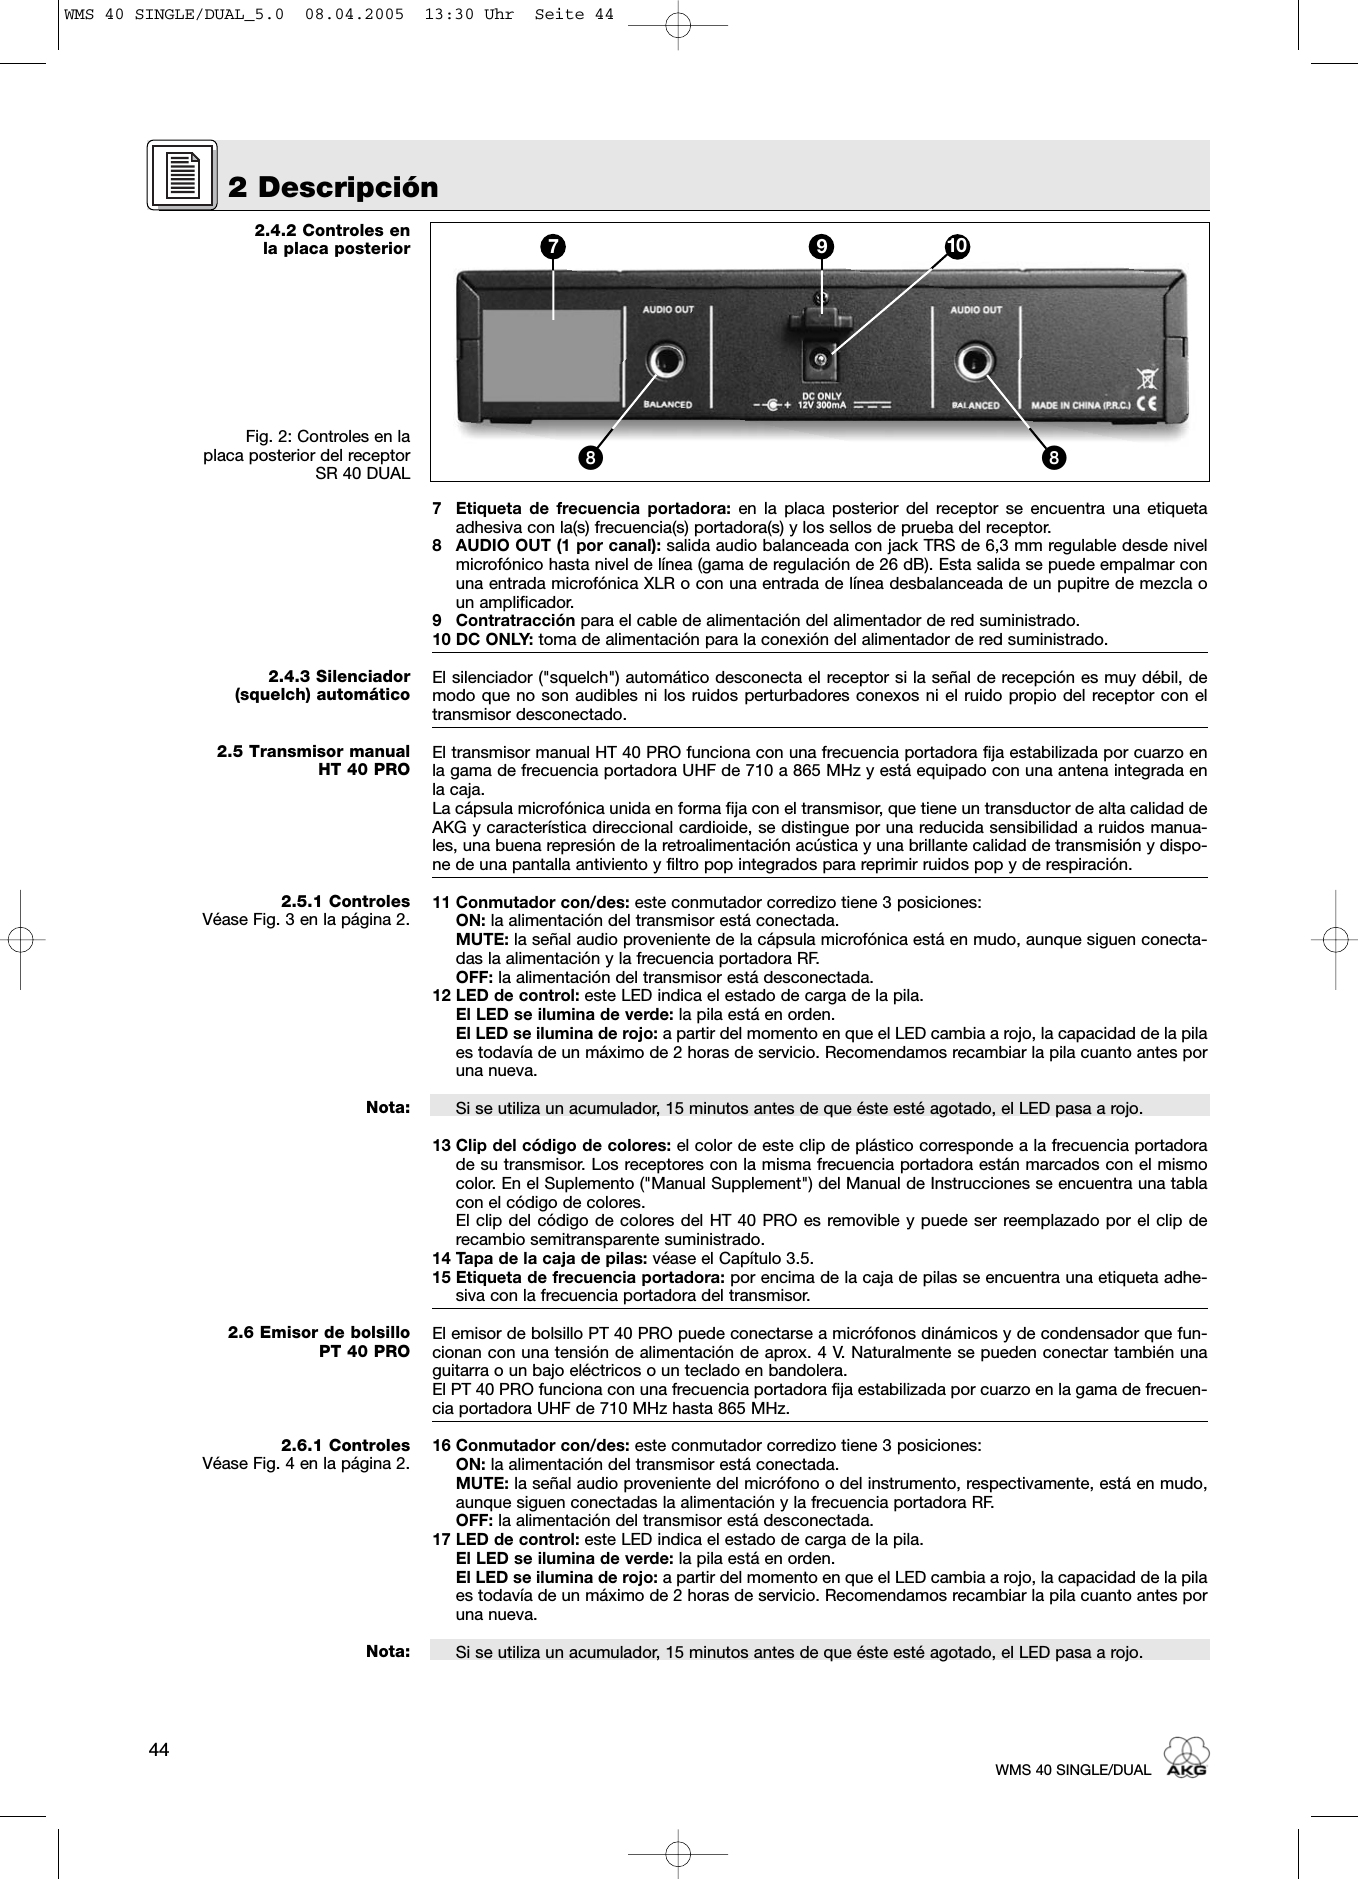 2.4.2 Controles en la placa posteriorFig. 2: Controles en la placa posterior del receptor SR 40 DUAL2.4.3 Silenciador (squelch) automático2.5 Transmisor manualHT 40 PRO2.5.1 ControlesVéase Fig. 3 en la página 2.Nota:2.6 Emisor de bolsillo PT 40 PRO2.6.1 ControlesVéase Fig. 4 en la página 2.Nota:7 Etiqueta de frecuencia portadora: en la placa posterior del receptor se encuentra una etiquetaadhesiva con la(s) frecuencia(s) portadora(s) y los sellos de prueba del receptor.8 AUDIO OUT (1 por canal): salida audio balanceada con jack TRS de 6,3 mm regulable desde nivelmicrofónico hasta nivel de línea (gama de regulación de 26 dB). Esta salida se puede empalmar conuna entrada microfónica XLR o con una entrada de línea desbalanceada de un pupitre de mezcla oun amplificador. 9 Contratracción para el cable de alimentación del alimentador de red suministrado.10 DC ONLY: toma de alimentación para la conexión del alimentador de red suministrado.El silenciador (&quot;squelch&quot;) automático desconecta el receptor si la señal de recepción es muy débil, demodo que no son audibles ni los ruidos perturbadores conexos ni el ruido propio del receptor con eltransmisor desconectado.El transmisor manual HT 40 PRO funciona con una frecuencia portadora fija estabilizada por cuarzo enla gama de frecuencia portadora UHF de 710 a 865 MHz y está equipado con una antena integrada enla caja.La cápsula microfónica unida en forma fija con el transmisor, que tiene un transductor de alta calidad deAKG y característica direccional cardioide, se distingue por una reducida sensibilidad a ruidos manua-les, una buena represión de la retroalimentación acústica y una brillante calidad de transmisión y dispo-ne de una pantalla antiviento y filtro pop integrados para reprimir ruidos pop y de respiración. 11 Conmutador con/des: este conmutador corredizo tiene 3 posiciones:ON: la alimentación del transmisor está conectada.MUTE: la señal audio proveniente de la cápsula microfónica está en mudo, aunque siguen conecta-das la alimentación y la frecuencia portadora RF.OFF: la alimentación del transmisor está desconectada.12 LED de control: este LED indica el estado de carga de la pila.El LED se ilumina de verde: la pila está en orden.El LED se ilumina de rojo: a partir del momento en que el LED cambia a rojo, la capacidad de la pilaes todavía de un máximo de 2 horas de servicio. Recomendamos recambiar la pila cuanto antes poruna nueva.Si se utiliza un acumulador, 15 minutos antes de que éste esté agotado, el LED pasa a rojo.13 Clip del código de colores: el color de este clip de plástico corresponde a la frecuencia portadorade su transmisor. Los receptores con la misma frecuencia portadora están marcados con el mismocolor. En el Suplemento (&quot;Manual Supplement&quot;) del Manual de Instrucciones se encuentra una tablacon el código de colores.El clip del código de colores del HT 40 PRO es removible y puede ser reemplazado por el clip derecambio semitransparente suministrado.14 Tapa de la caja de pilas: véase el Capítulo 3.5.15 Etiqueta de frecuencia portadora: por encima de la caja de pilas se encuentra una etiqueta adhe-siva con la frecuencia portadora del transmisor.El emisor de bolsillo PT 40 PRO puede conectarse a micrófonos dinámicos y de condensador que fun-cionan con una tensión de alimentación de aprox. 4 V. Naturalmente se pueden conectar también unaguitarra o un bajo eléctricos o un teclado en bandolera.El PT 40 PRO funciona con una frecuencia portadora fija estabilizada por cuarzo en la gama de frecuen-cia portadora UHF de 710 MHz hasta 865 MHz.16 Conmutador con/des: este conmutador corredizo tiene 3 posiciones:ON: la alimentación del transmisor está conectada.MUTE: la señal audio proveniente del micrófono o del instrumento, respectivamente, está en mudo,aunque siguen conectadas la alimentación y la frecuencia portadora RF.OFF: la alimentación del transmisor está desconectada.17 LED de control: este LED indica el estado de carga de la pila.El LED se ilumina de verde: la pila está en orden.El LED se ilumina de rojo: a partir del momento en que el LED cambia a rojo, la capacidad de la pilaes todavía de un máximo de 2 horas de servicio. Recomendamos recambiar la pila cuanto antes poruna nueva.Si se utiliza un acumulador, 15 minutos antes de que éste esté agotado, el LED pasa a rojo.2 Descripción44WMS 40 SINGLE/DUAL7 9 10ᕨᕨWMS 40 SINGLE/DUAL_5.0  08.04.2005  13:30 Uhr  Seite 44